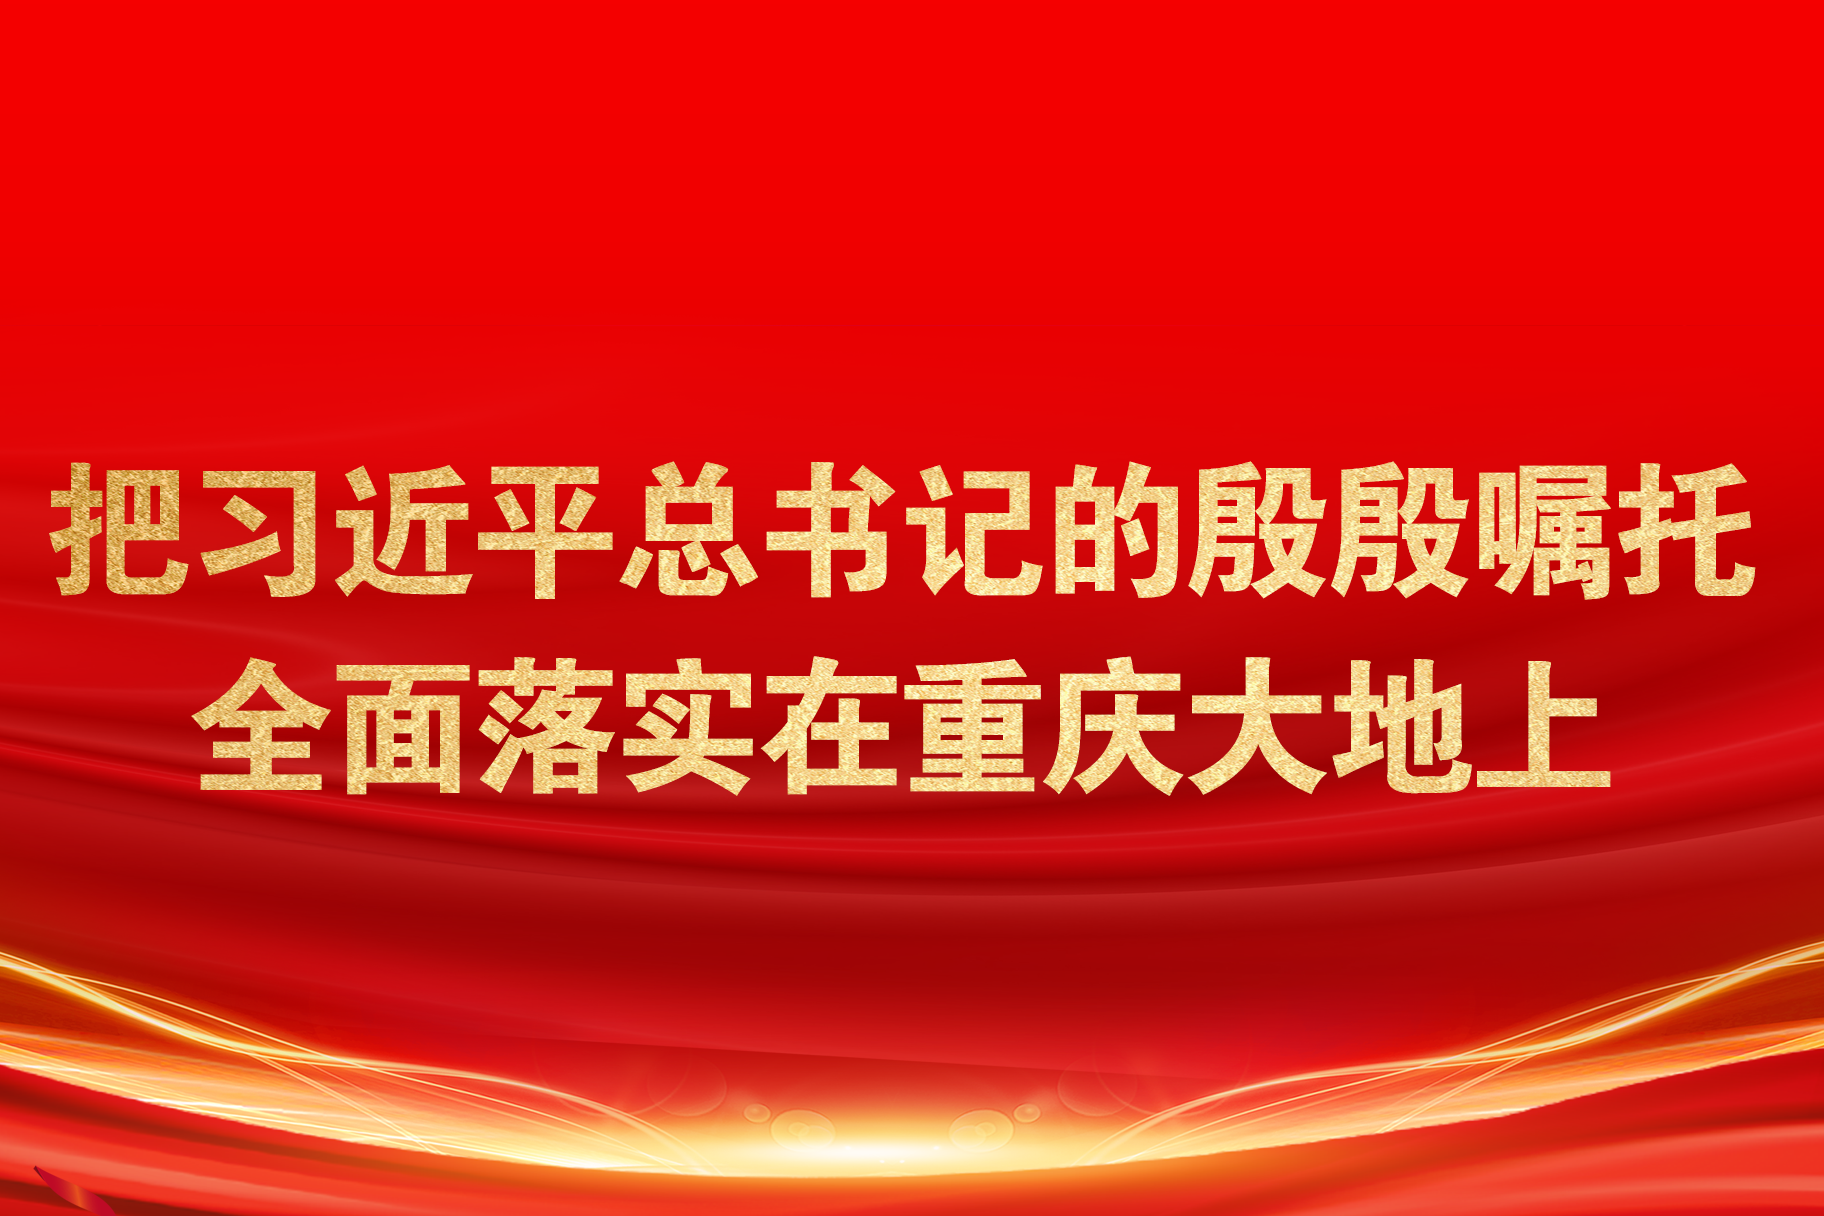 习近平总书记视察重庆时的重要讲话在铜梁区广大党员干部群众中引起热烈反响